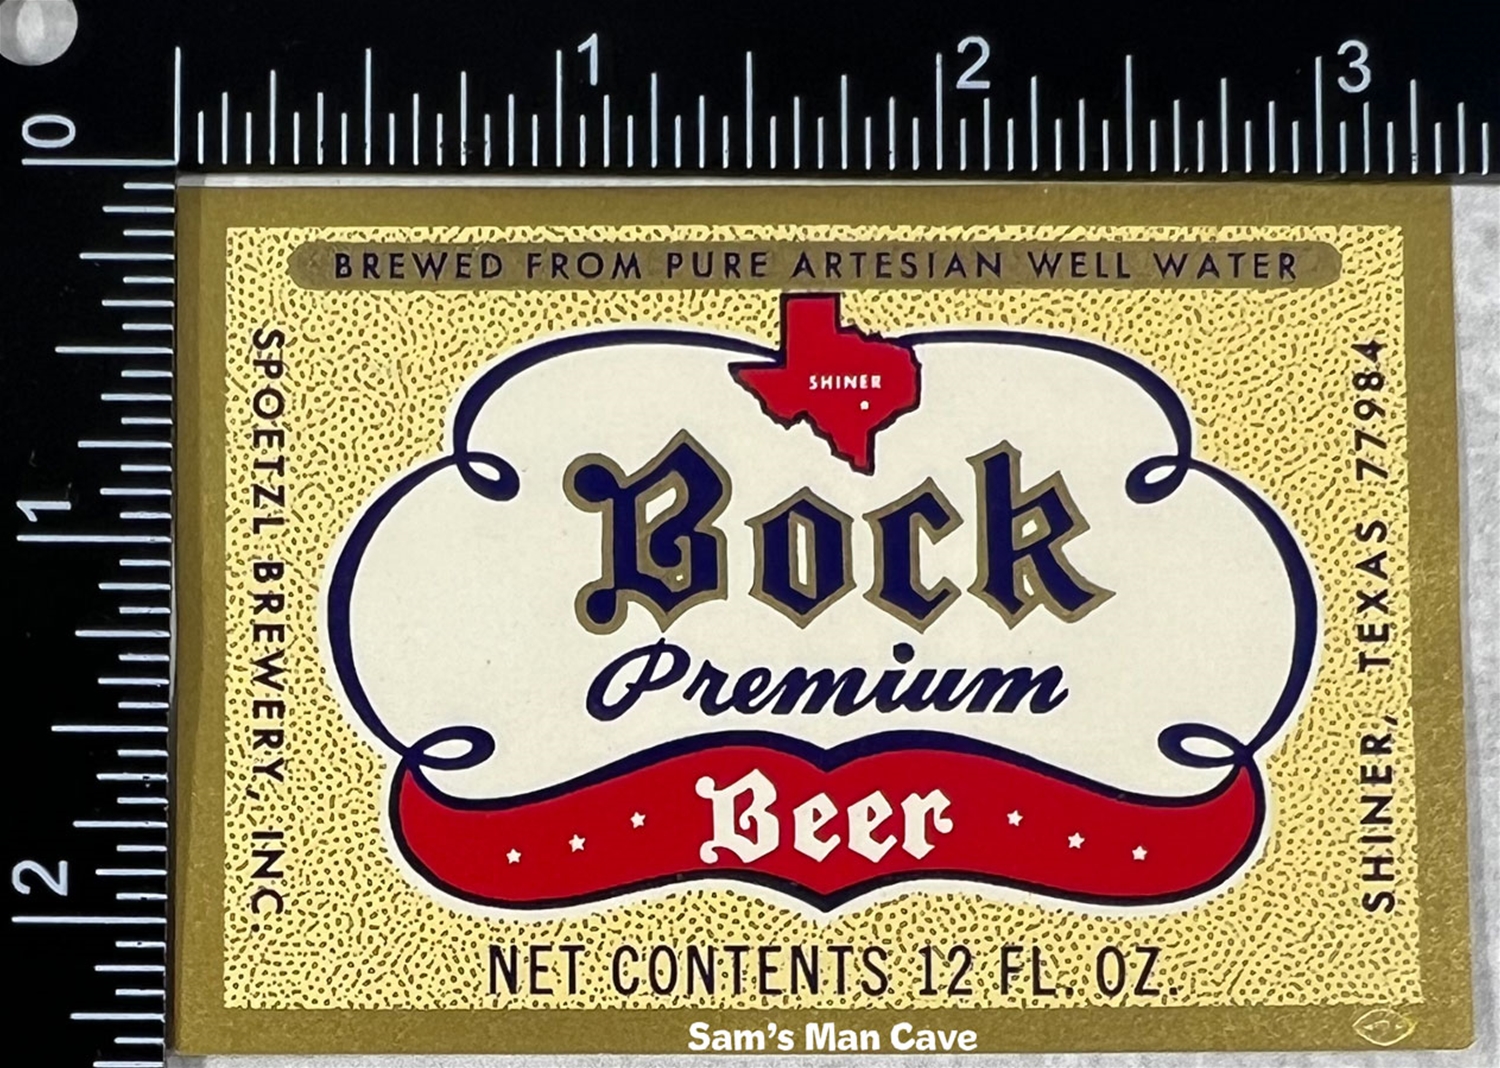 Shiner Bock Beer Label